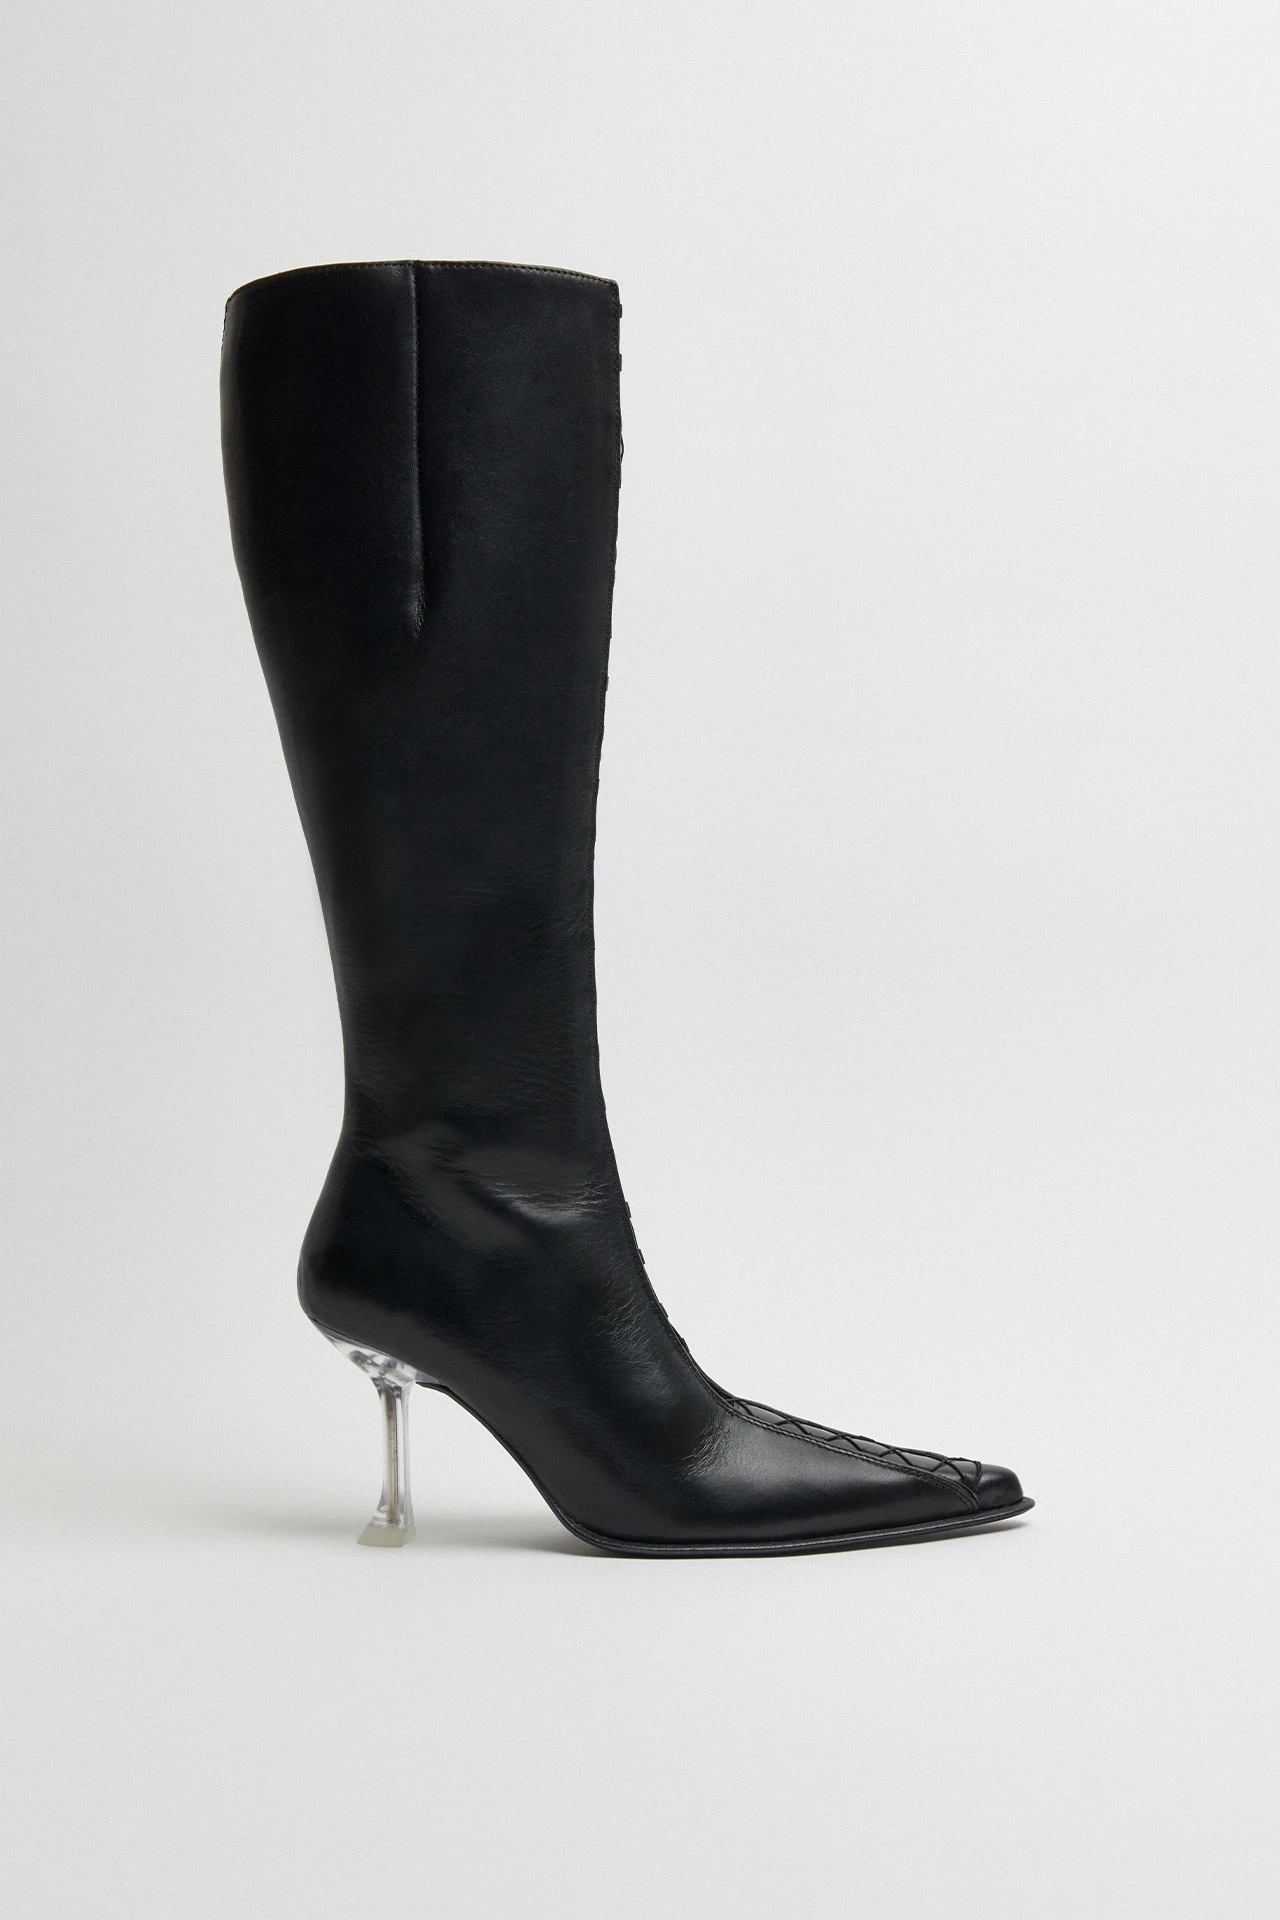 Miista-aline-black-tall-boots-01